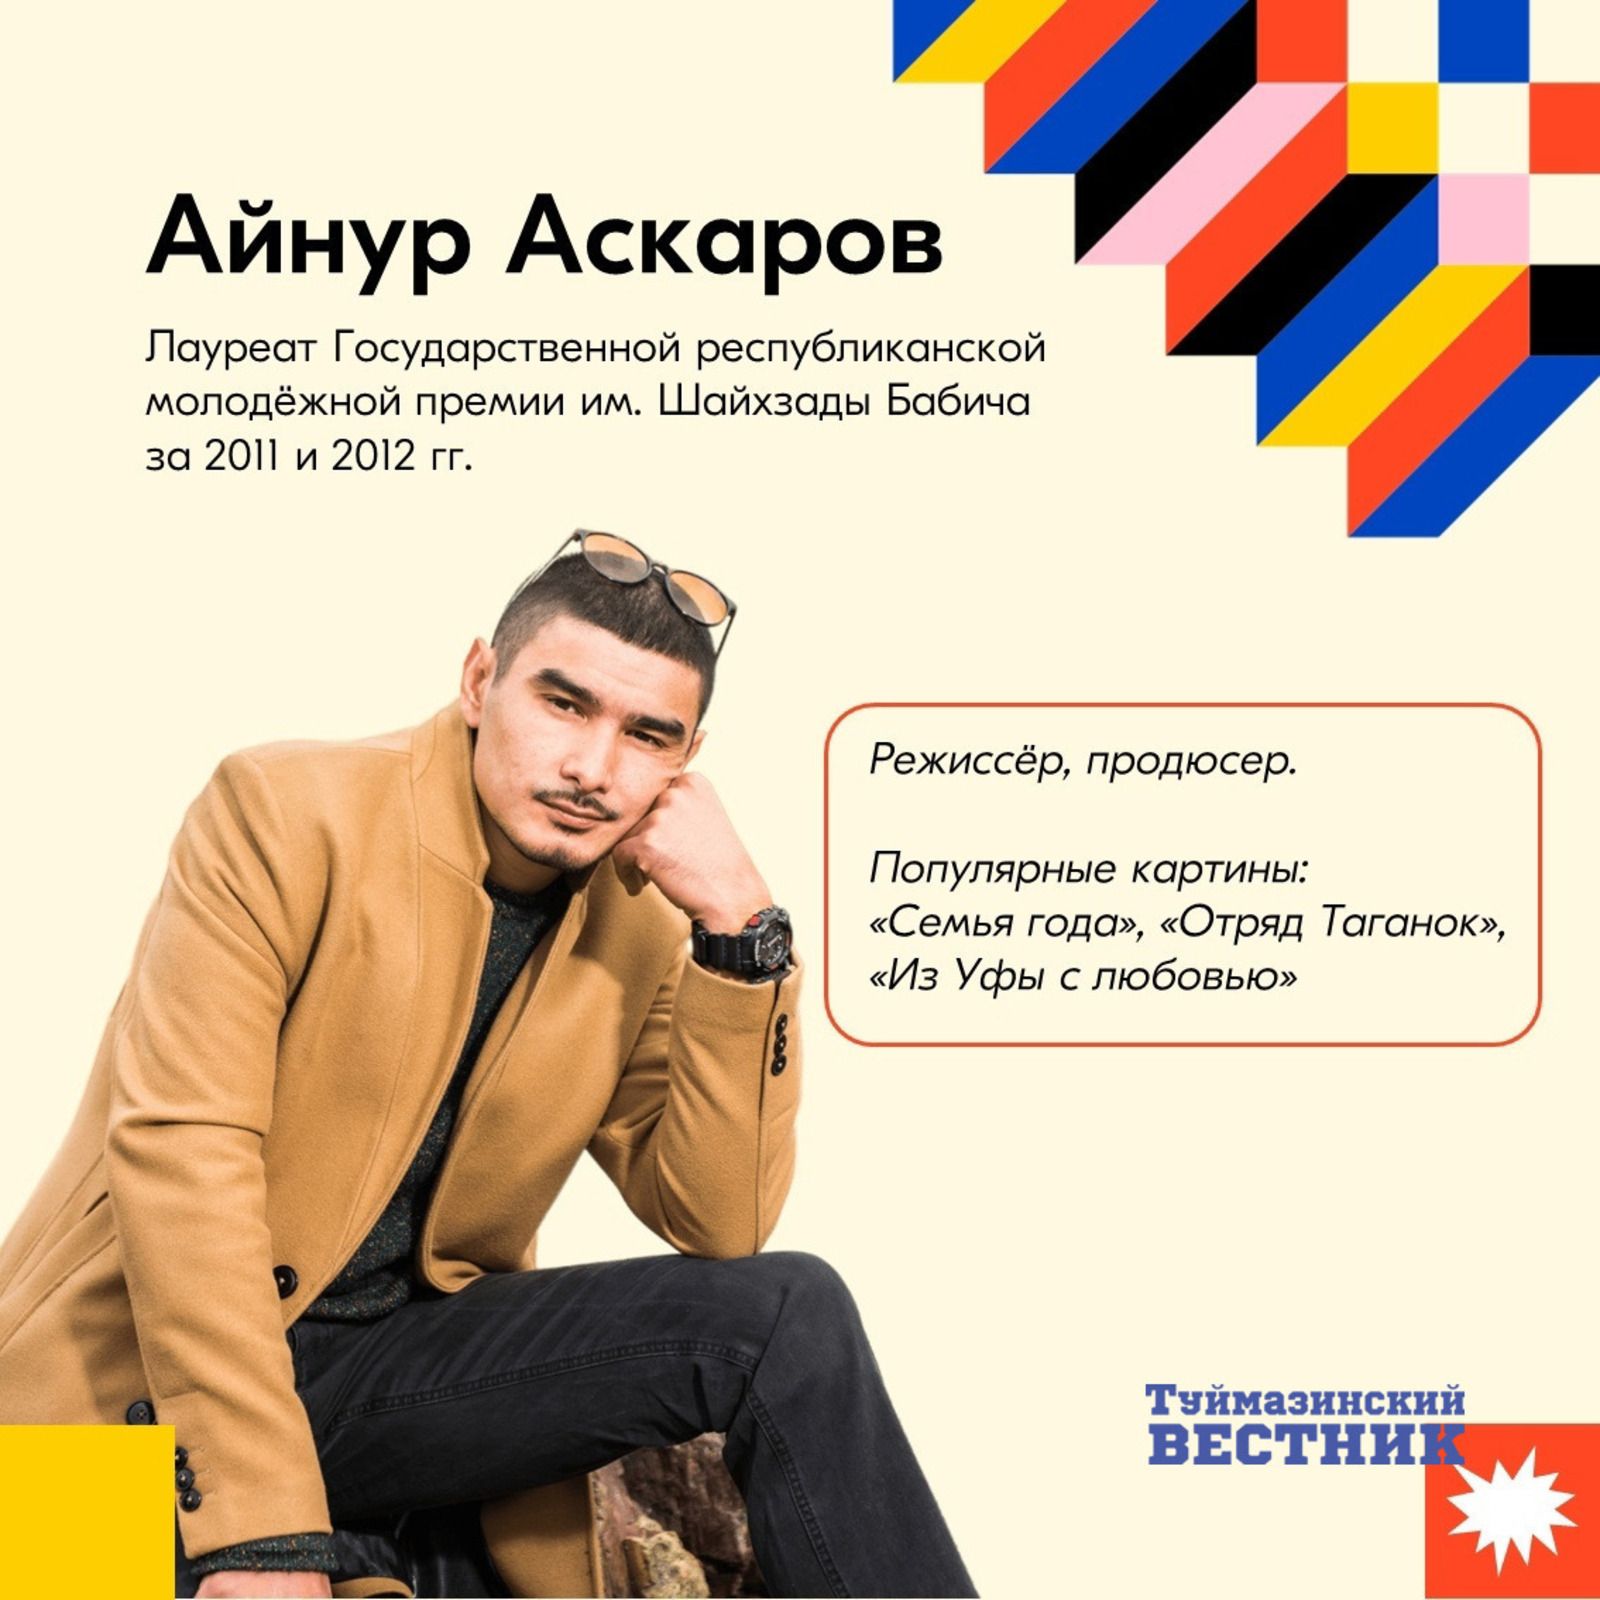 В Башкортостане присуждают государственные республиканские молодежные премии имени Шайхзады Бабича